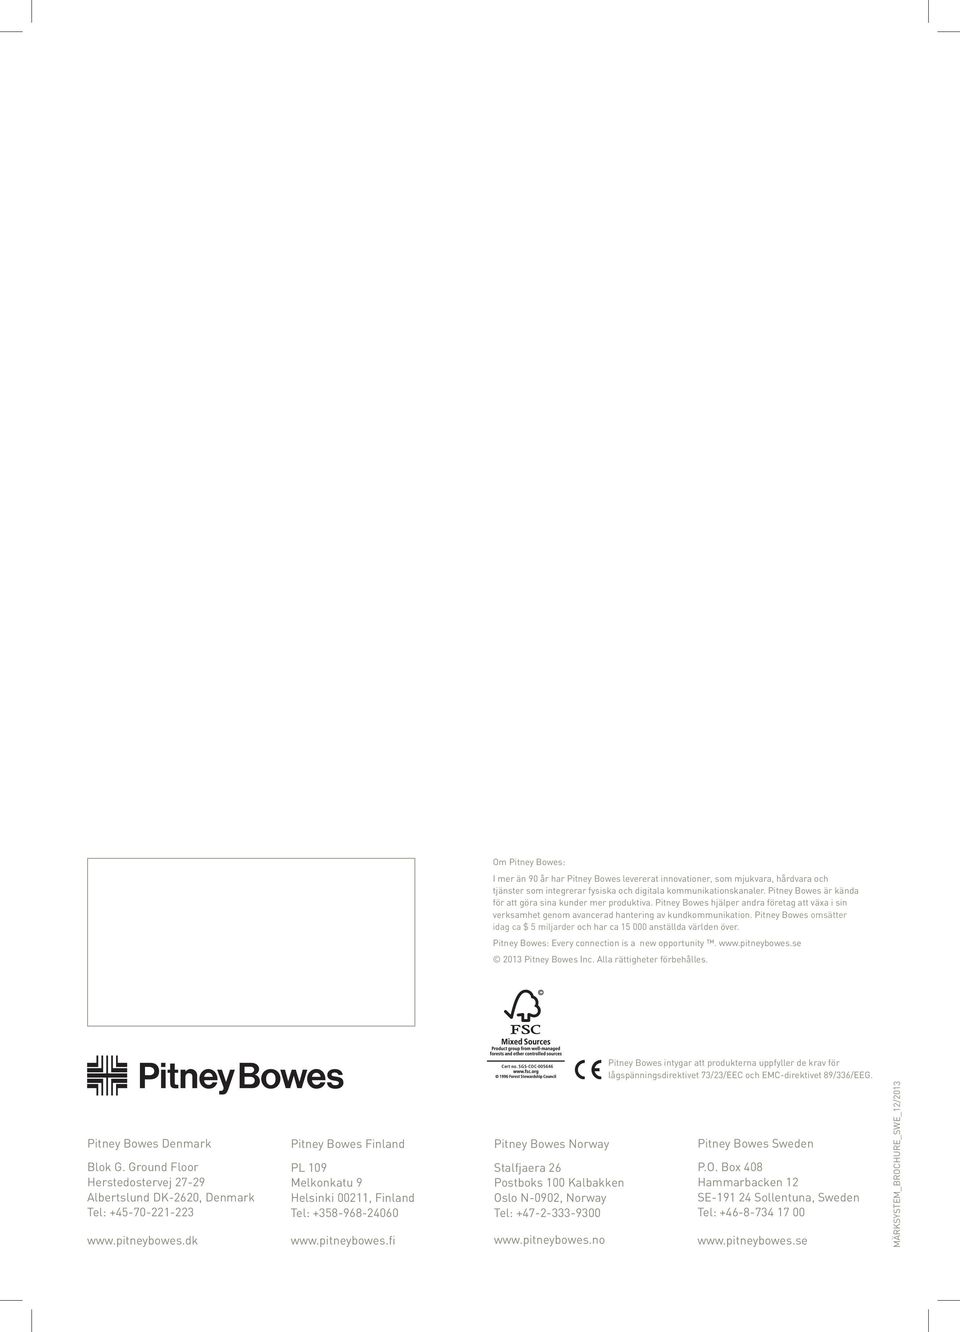 Pitney Bowes omsätter idag ca $ 5 miljarder och har ca 15 000 anställda världen över. Pitney Bowes: Every connection is a new opportunity. www.pitneybowes.se 2013 Pitney Bowes Inc.